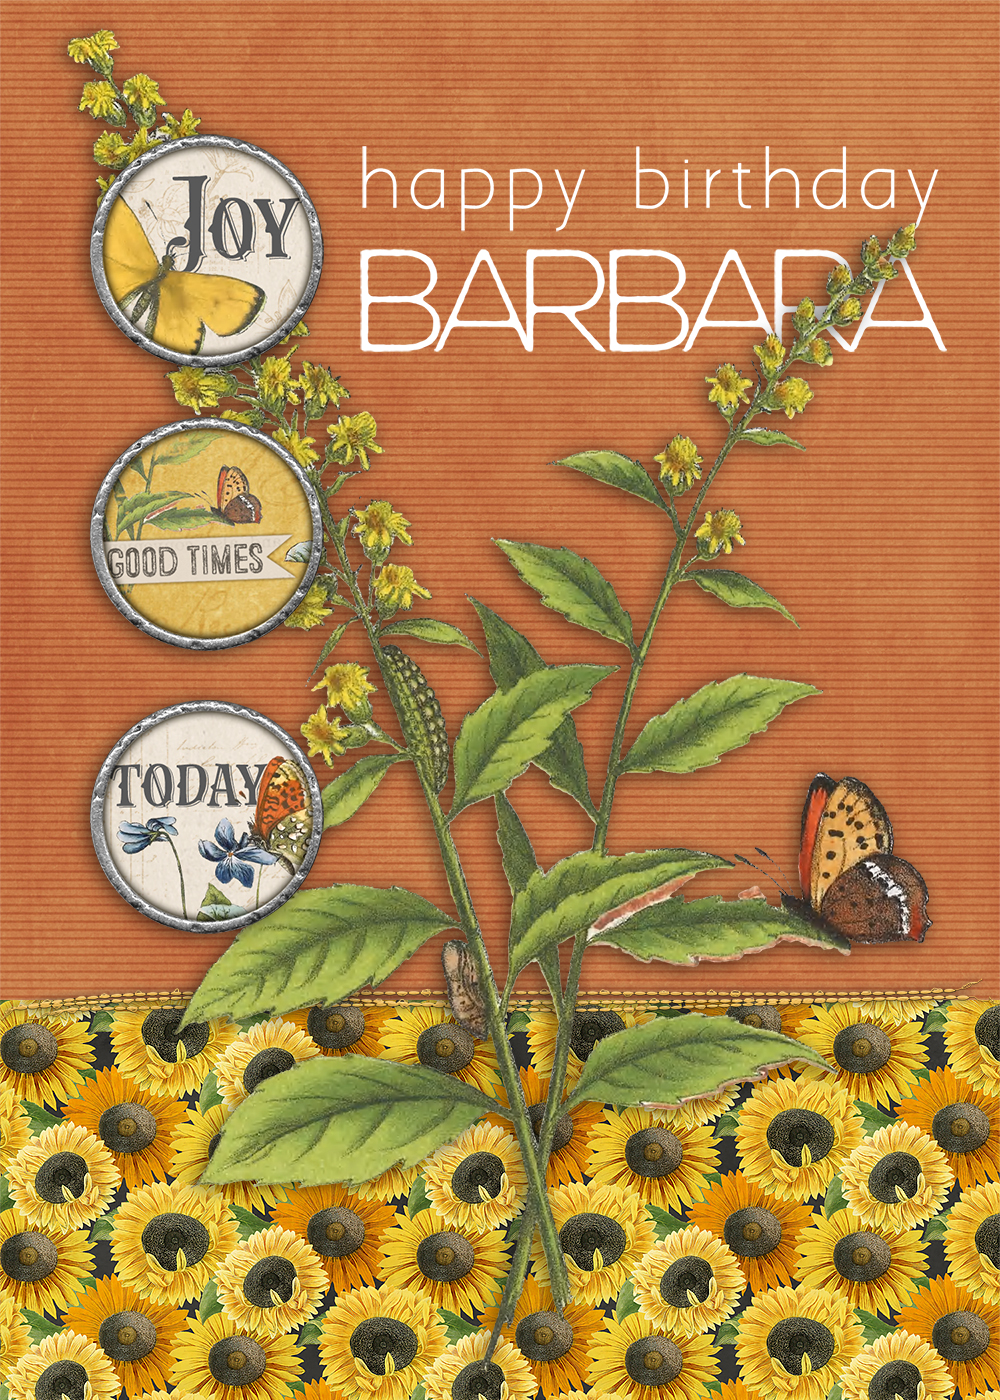 barbara bday card